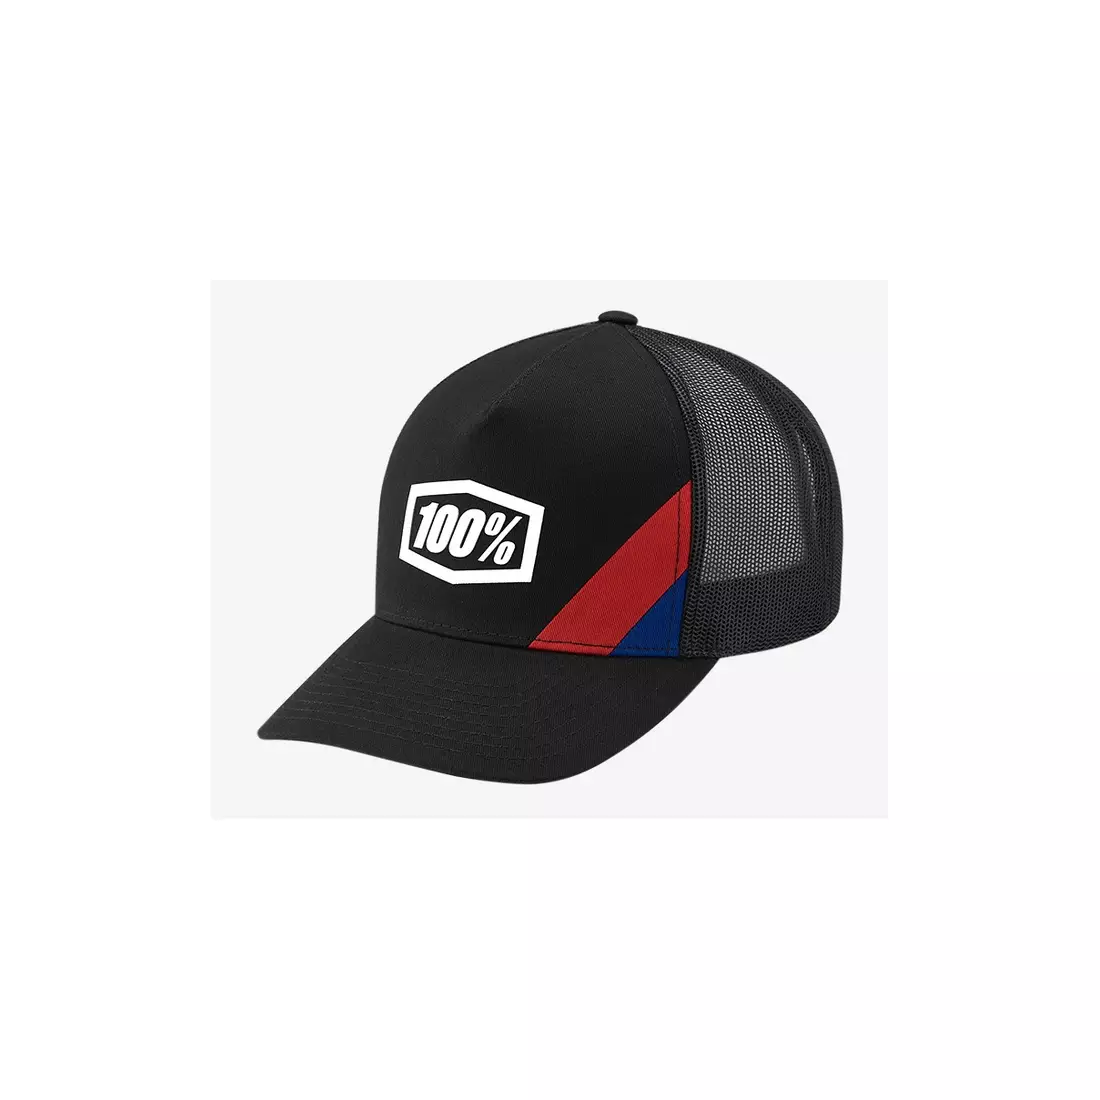 100% czapka z daszkiem CORNERSTONE X-Fit black STO-20070-001-01